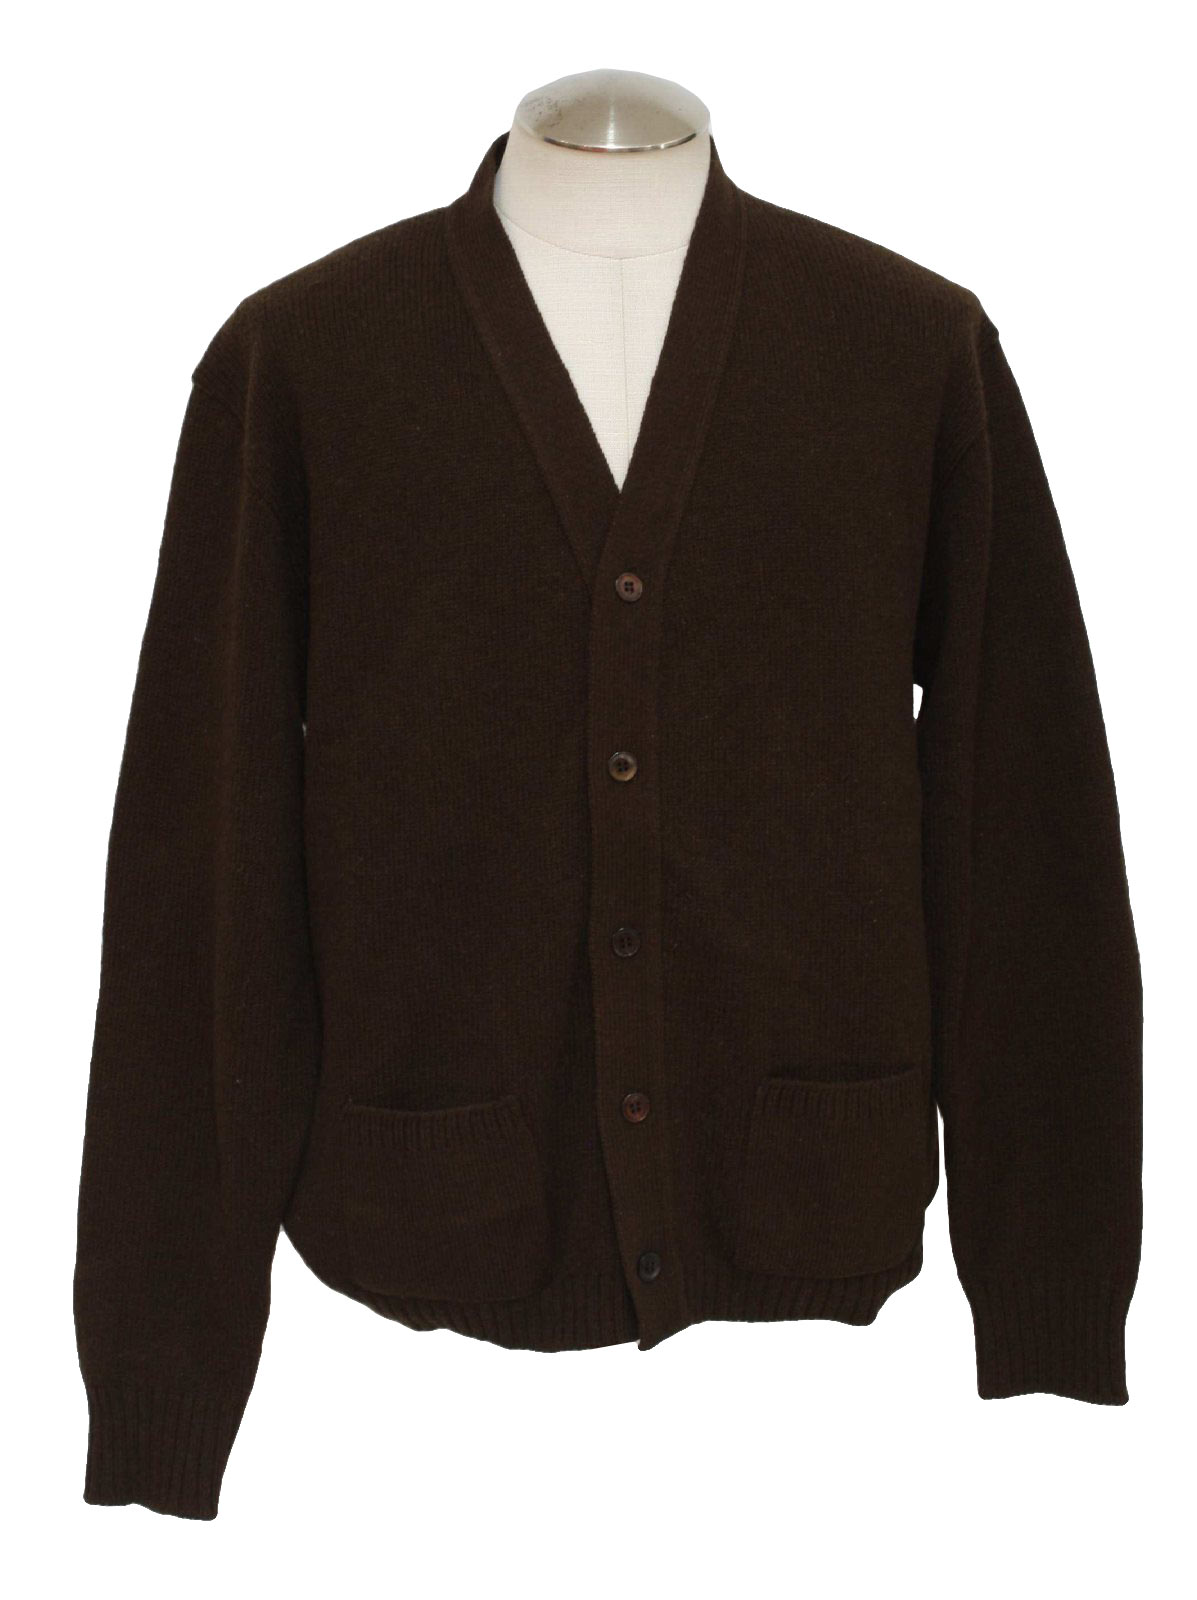 Retro 1970's Caridgan Sweater (Jantzen) : 70s -Jantzen- Mens dark brown ...